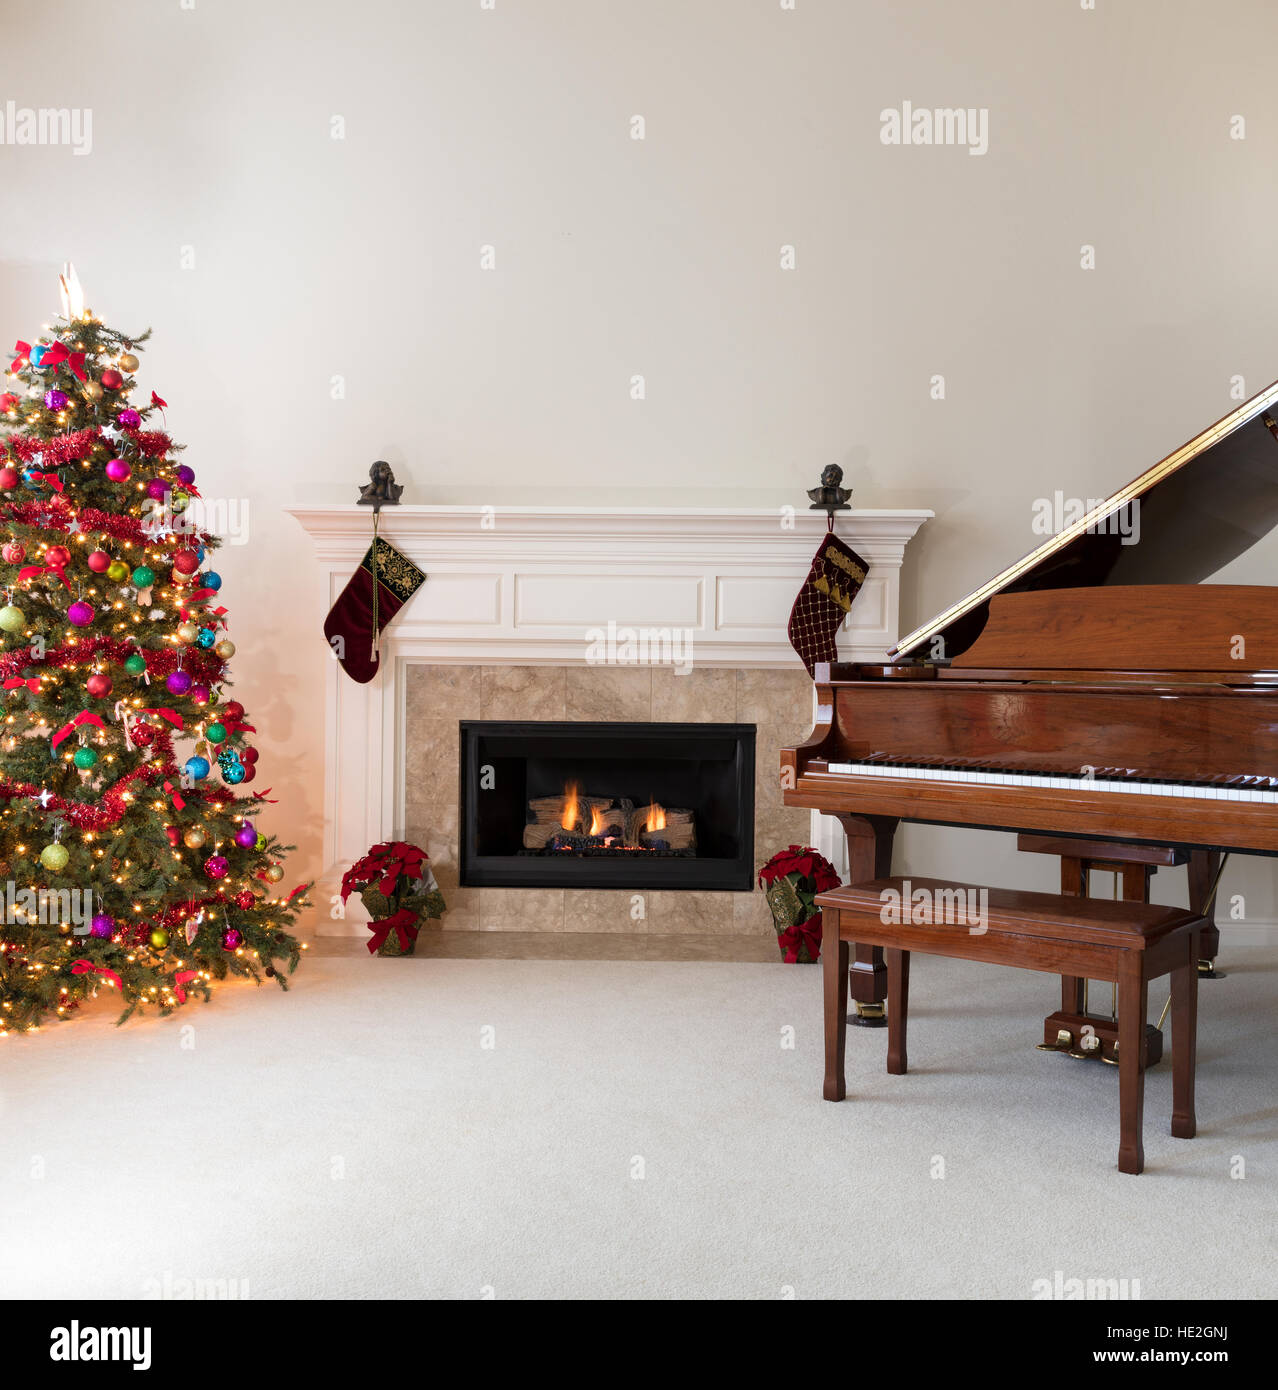 Salle de séjour avec cheminée rougeoyante, piano à queue et l'arbre de Noël décoré pour les fêtes Banque D'Images